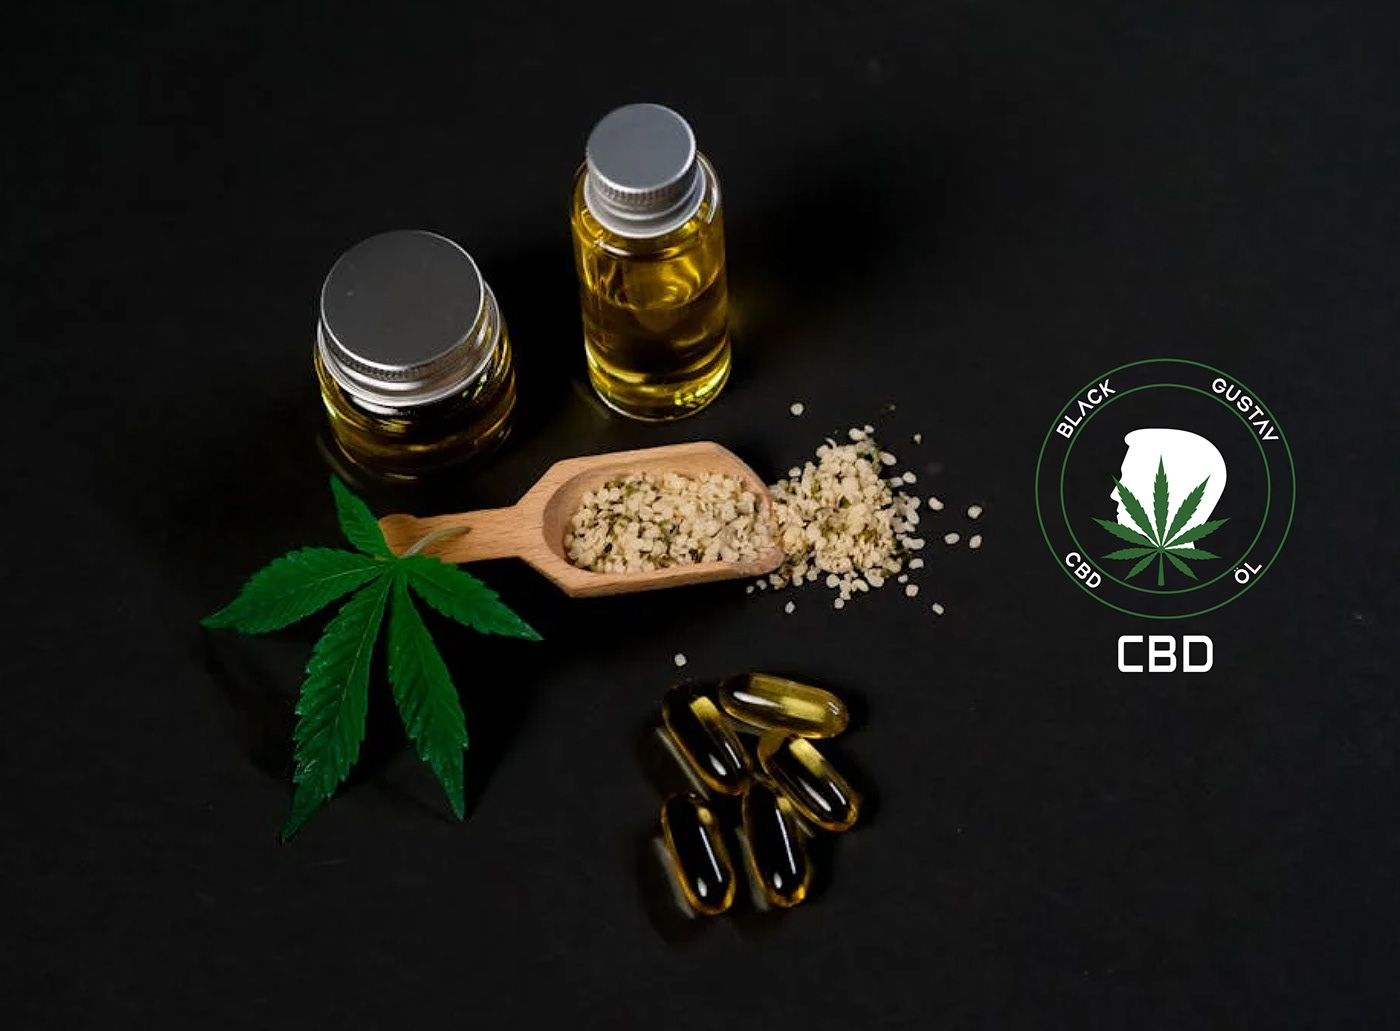 logo logos Logo Design CBD cannabis Health doctor agriculture Food  environment